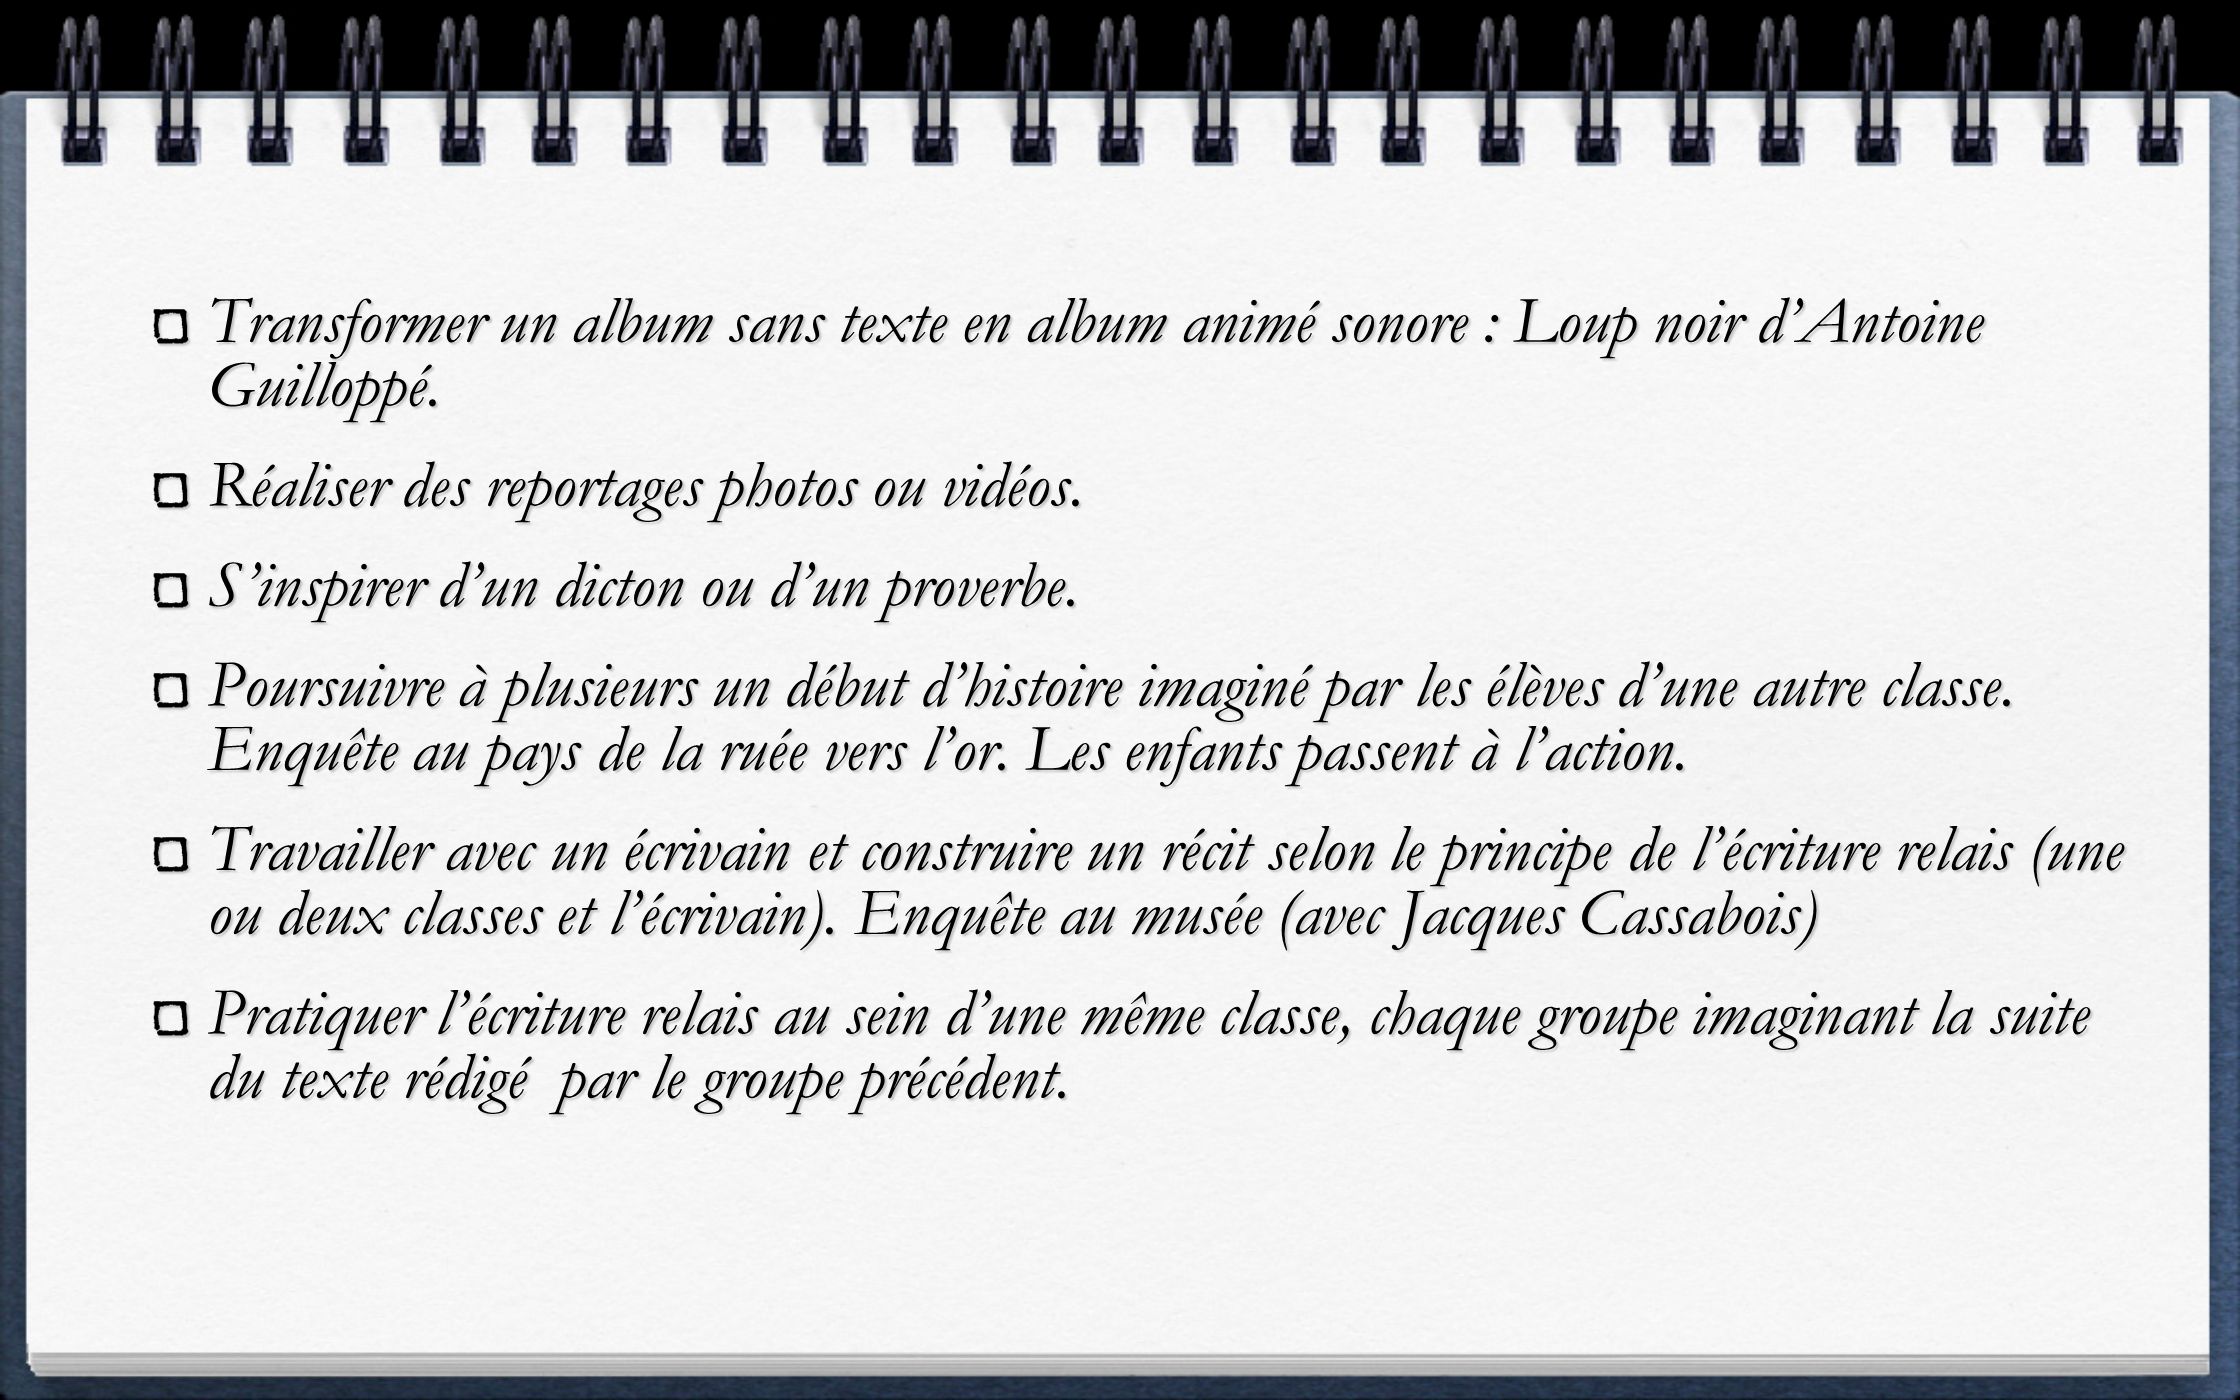 Transformer un album sans texte en album animé sonore : Loup noir d’Antoine Guilloppé.